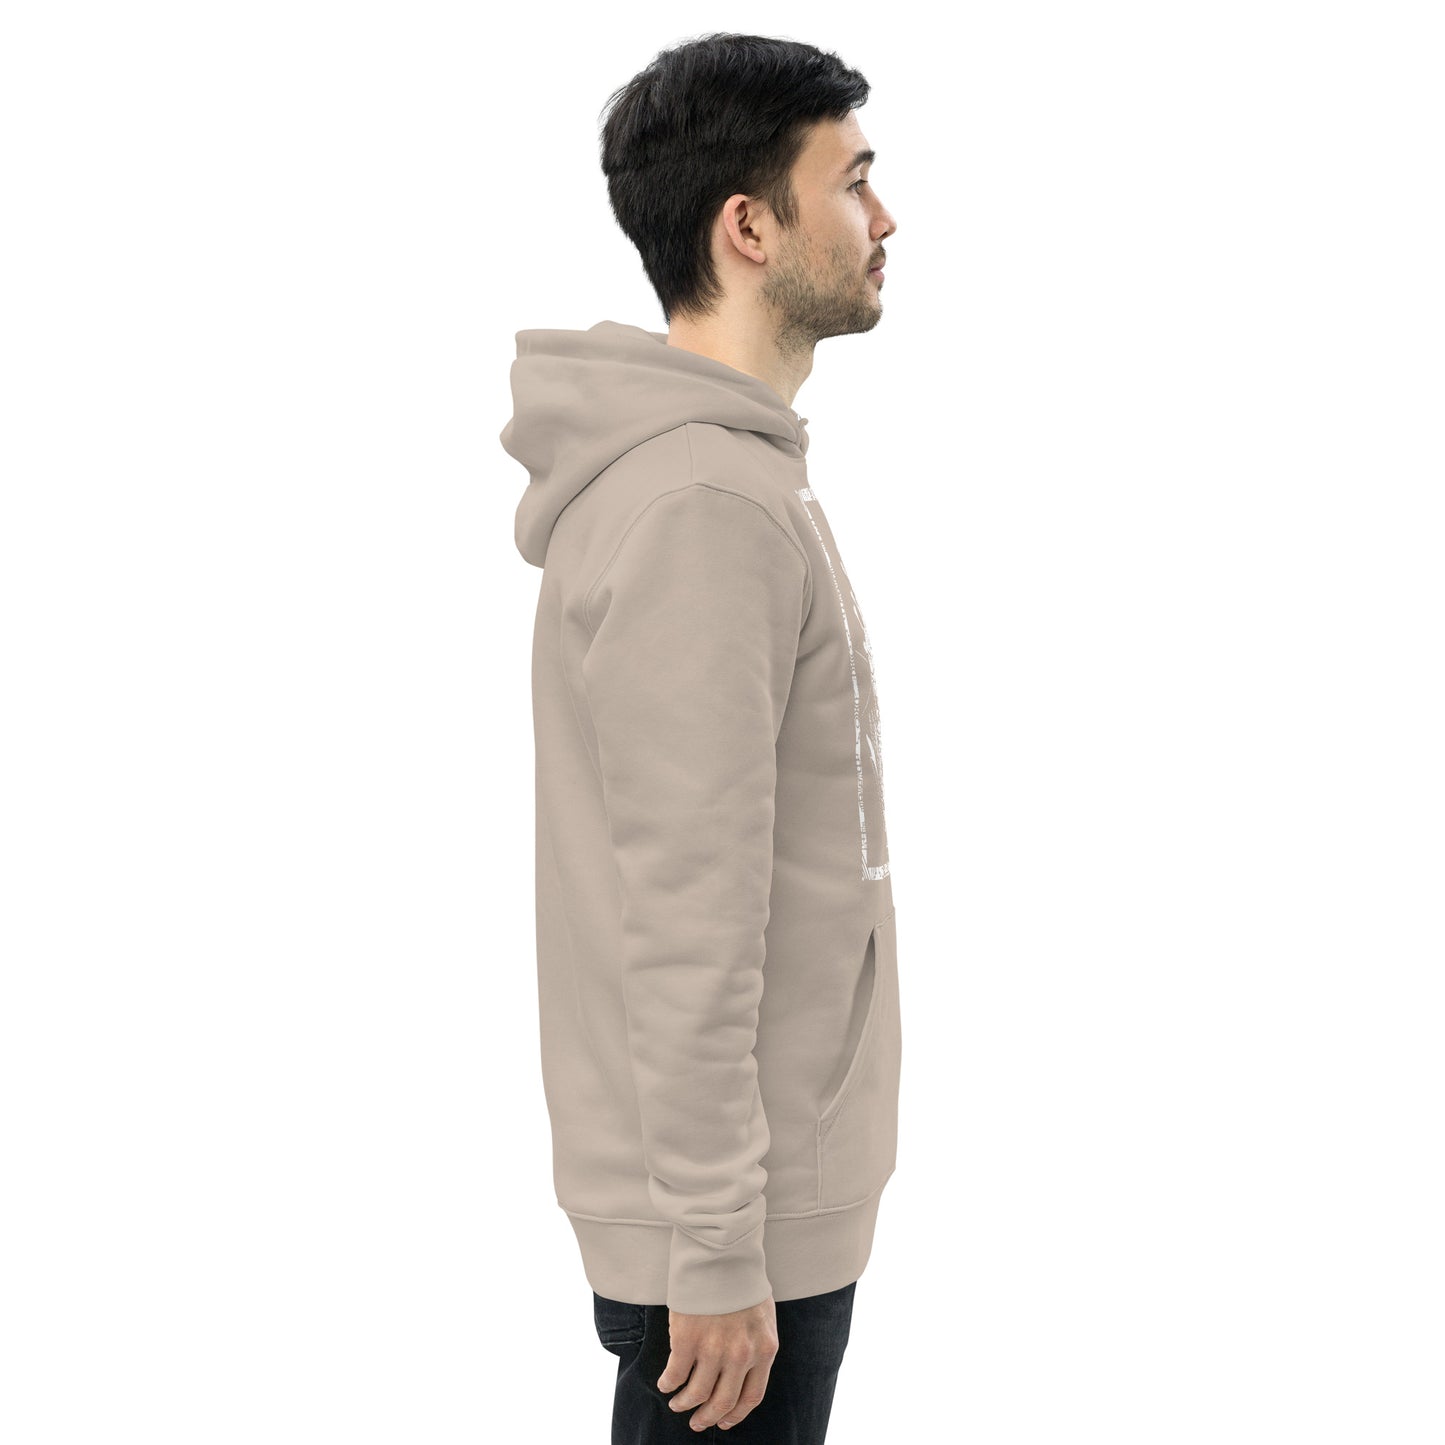 Last Sip- White- Unisex organic hoodie